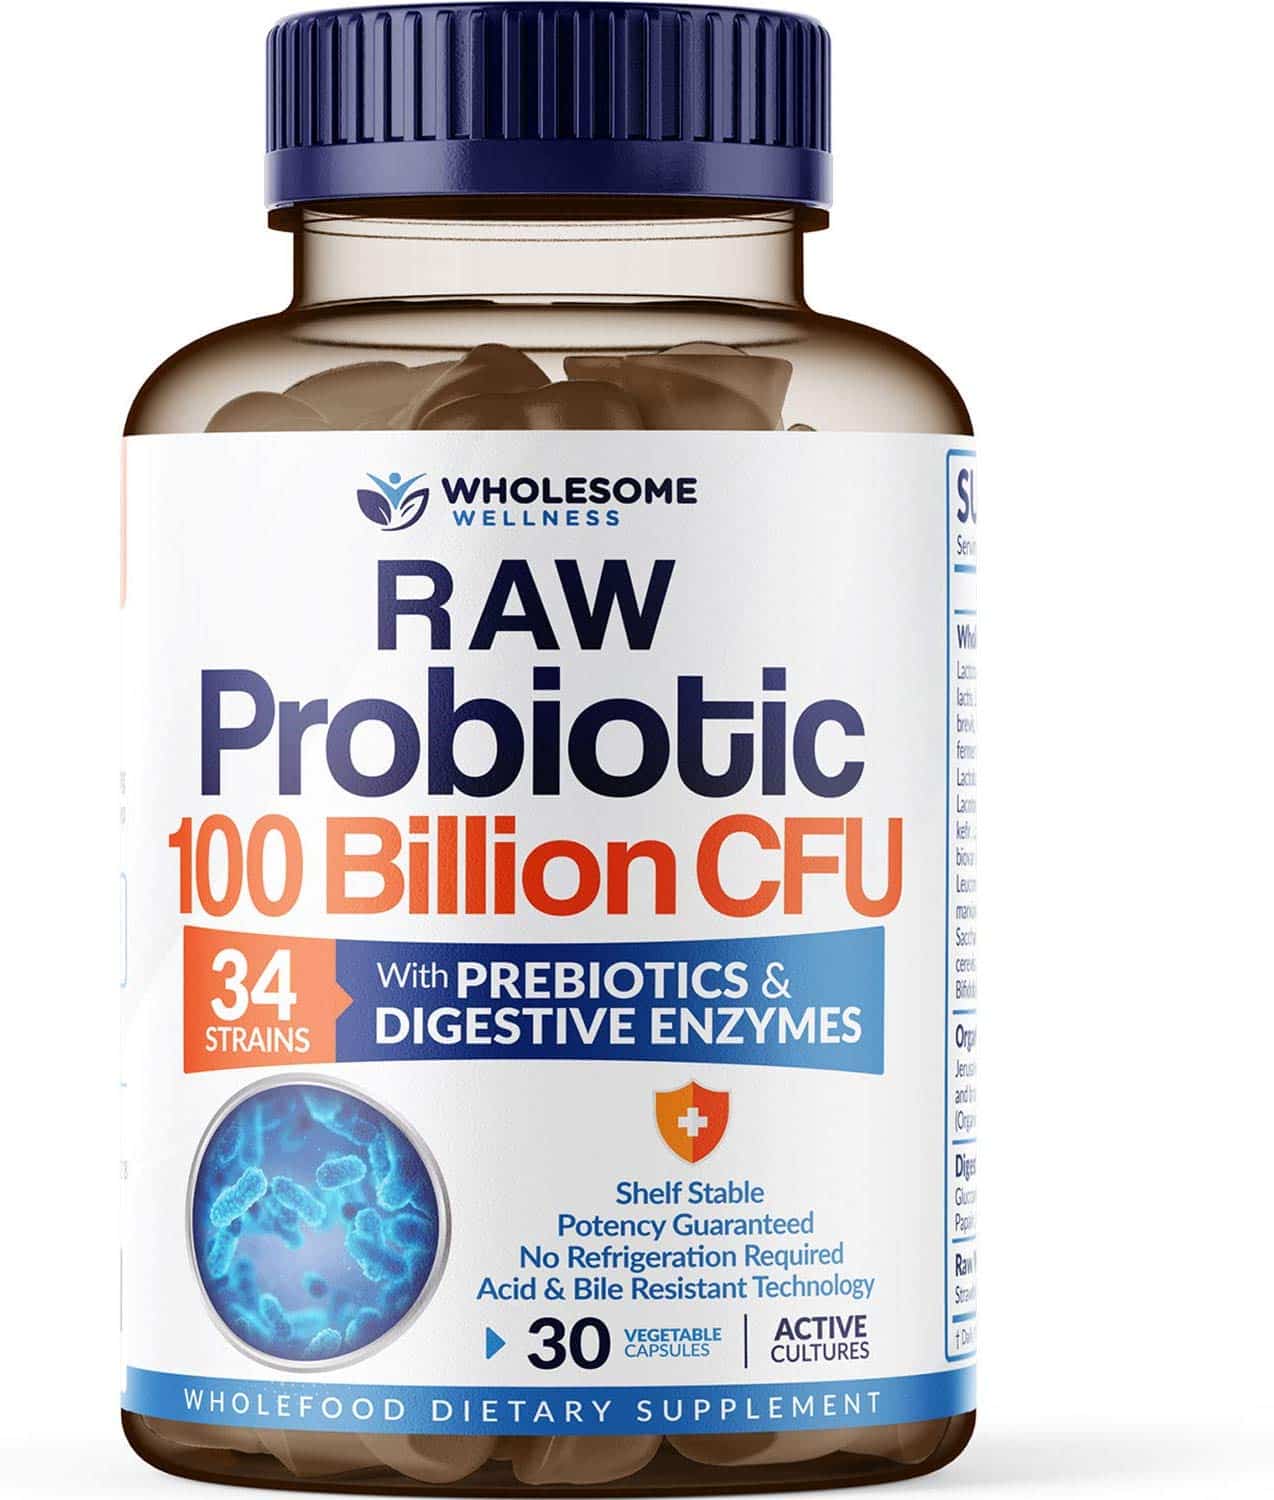 Best Probiotic [2021] Top Rated Probiotics Supplements Brands [Review]